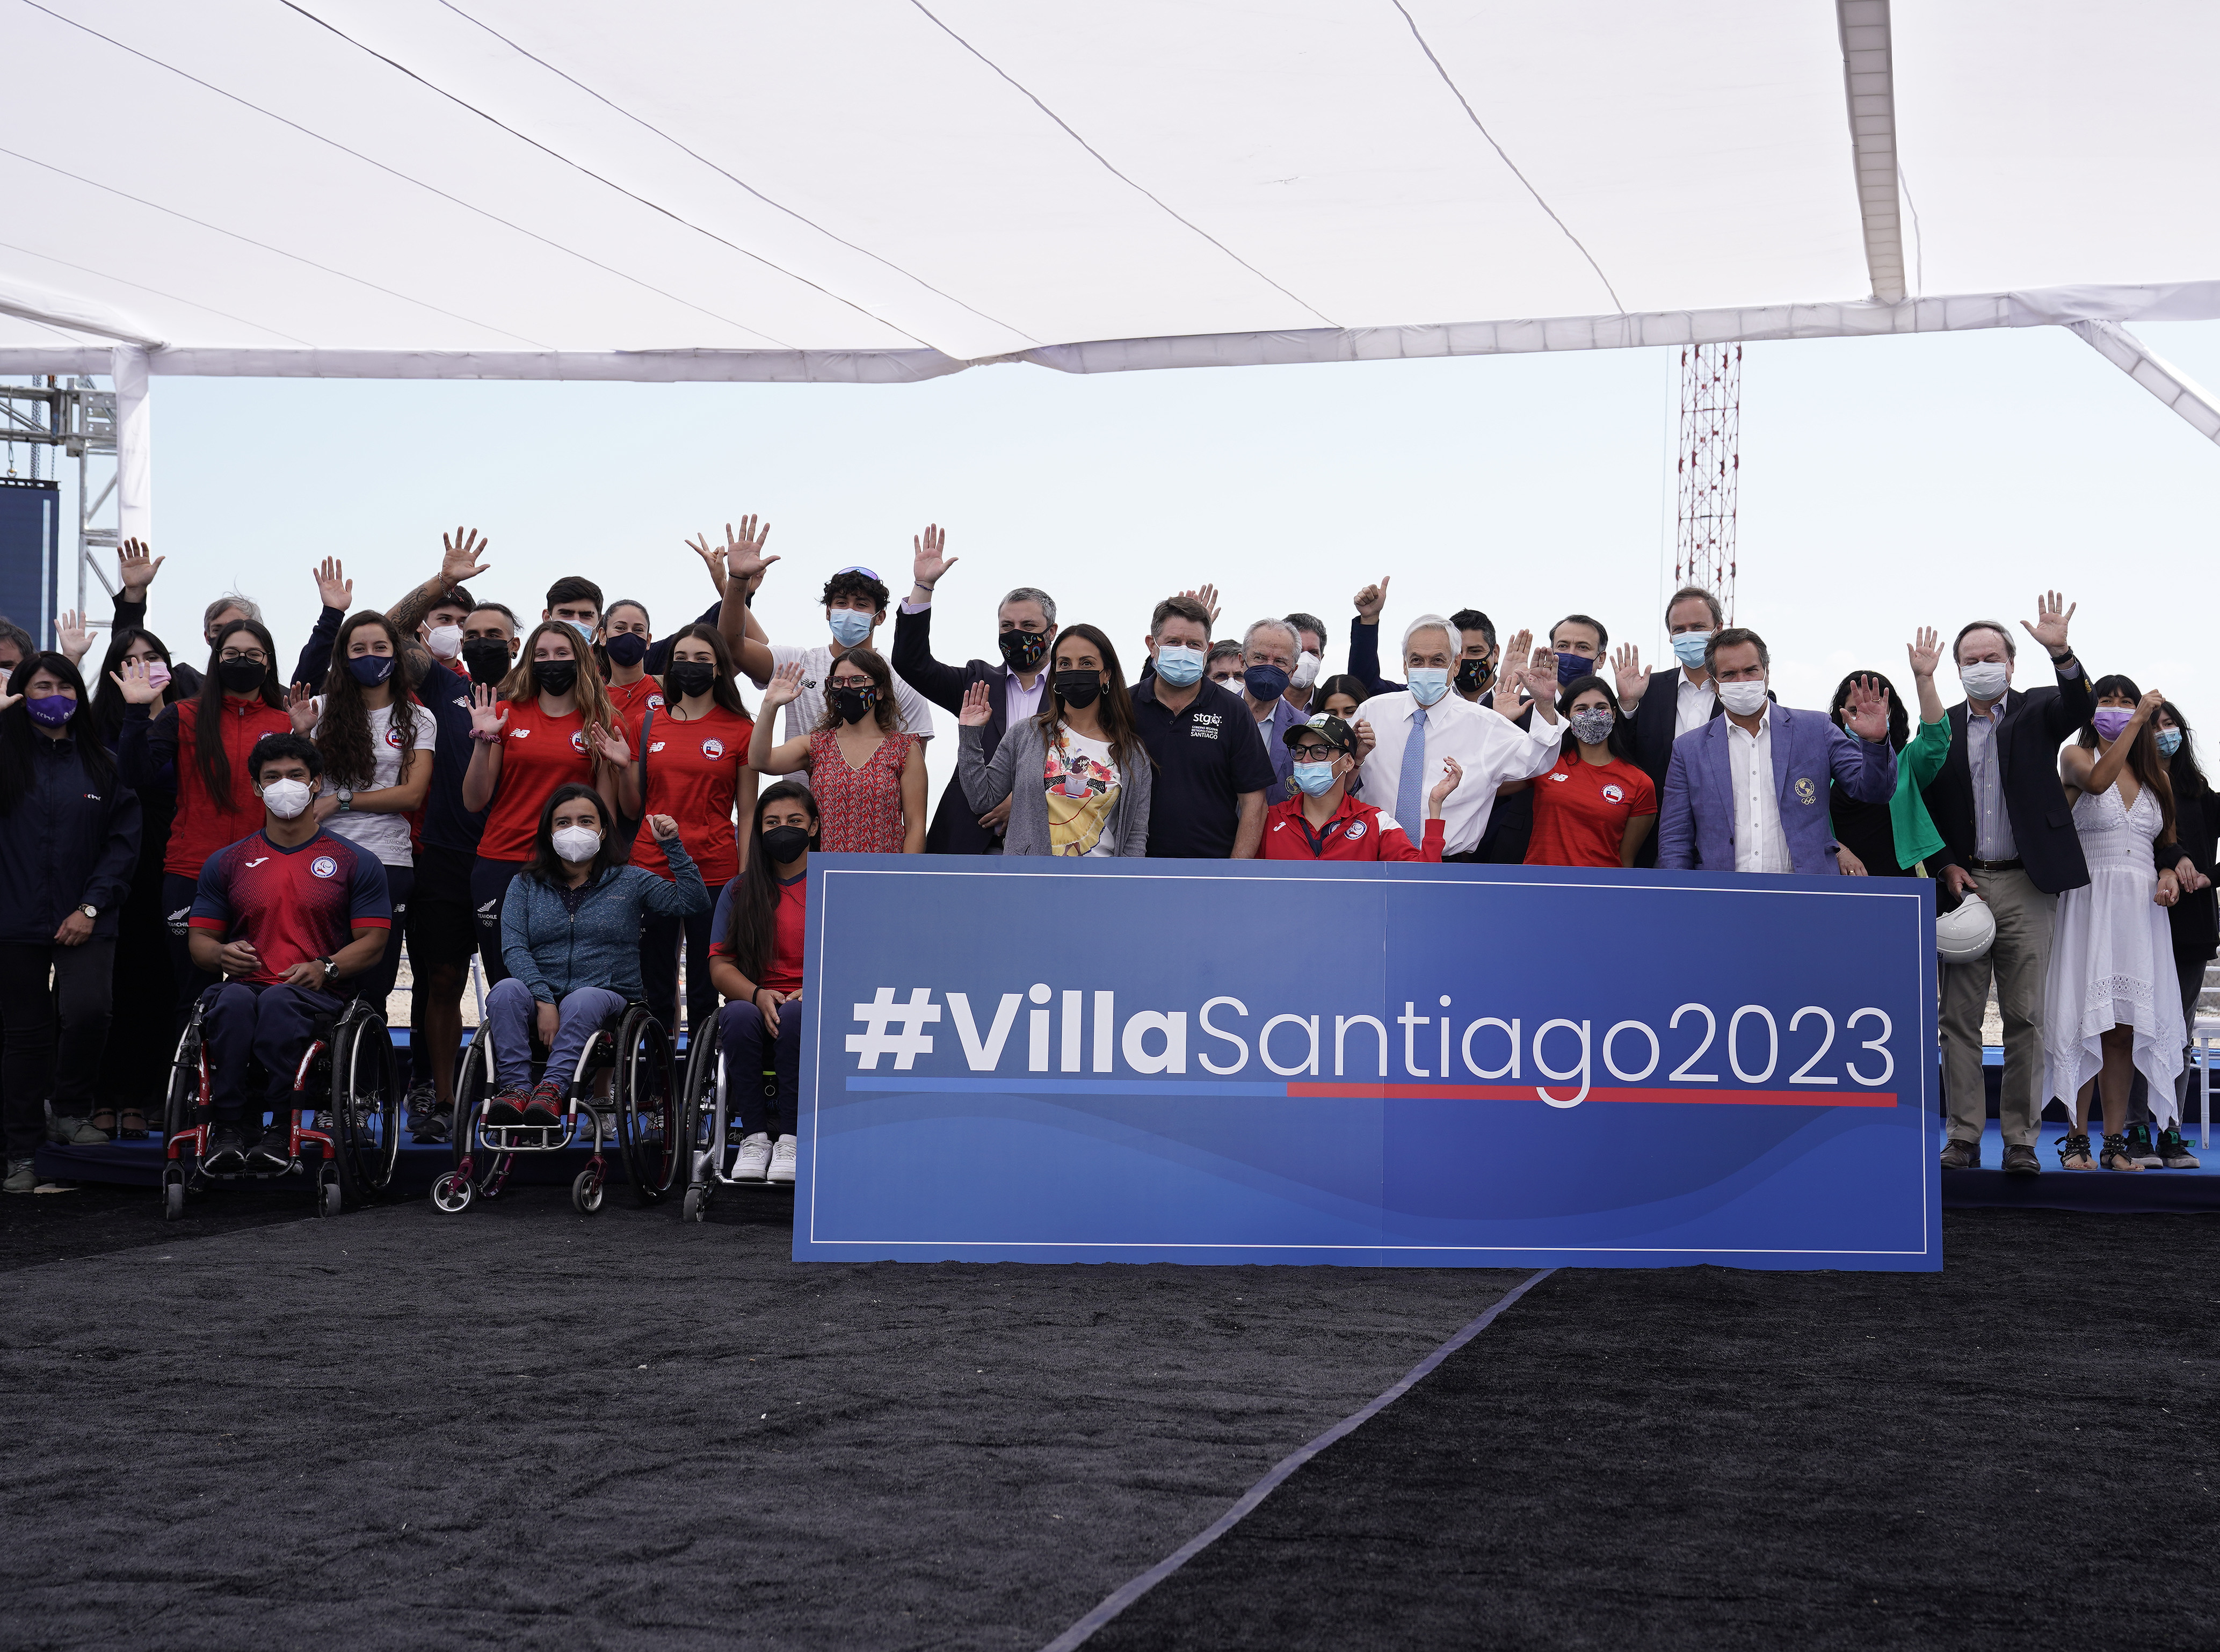 Presidente Piñera instala primera piedra de la Villa Santiago 2023 para los Juegos Panamericanos y Parapanamericanos: “En este espacio van a residir los sueños, los proyectos y las metas de cientos de deportistas chilenos que nos van a representar”